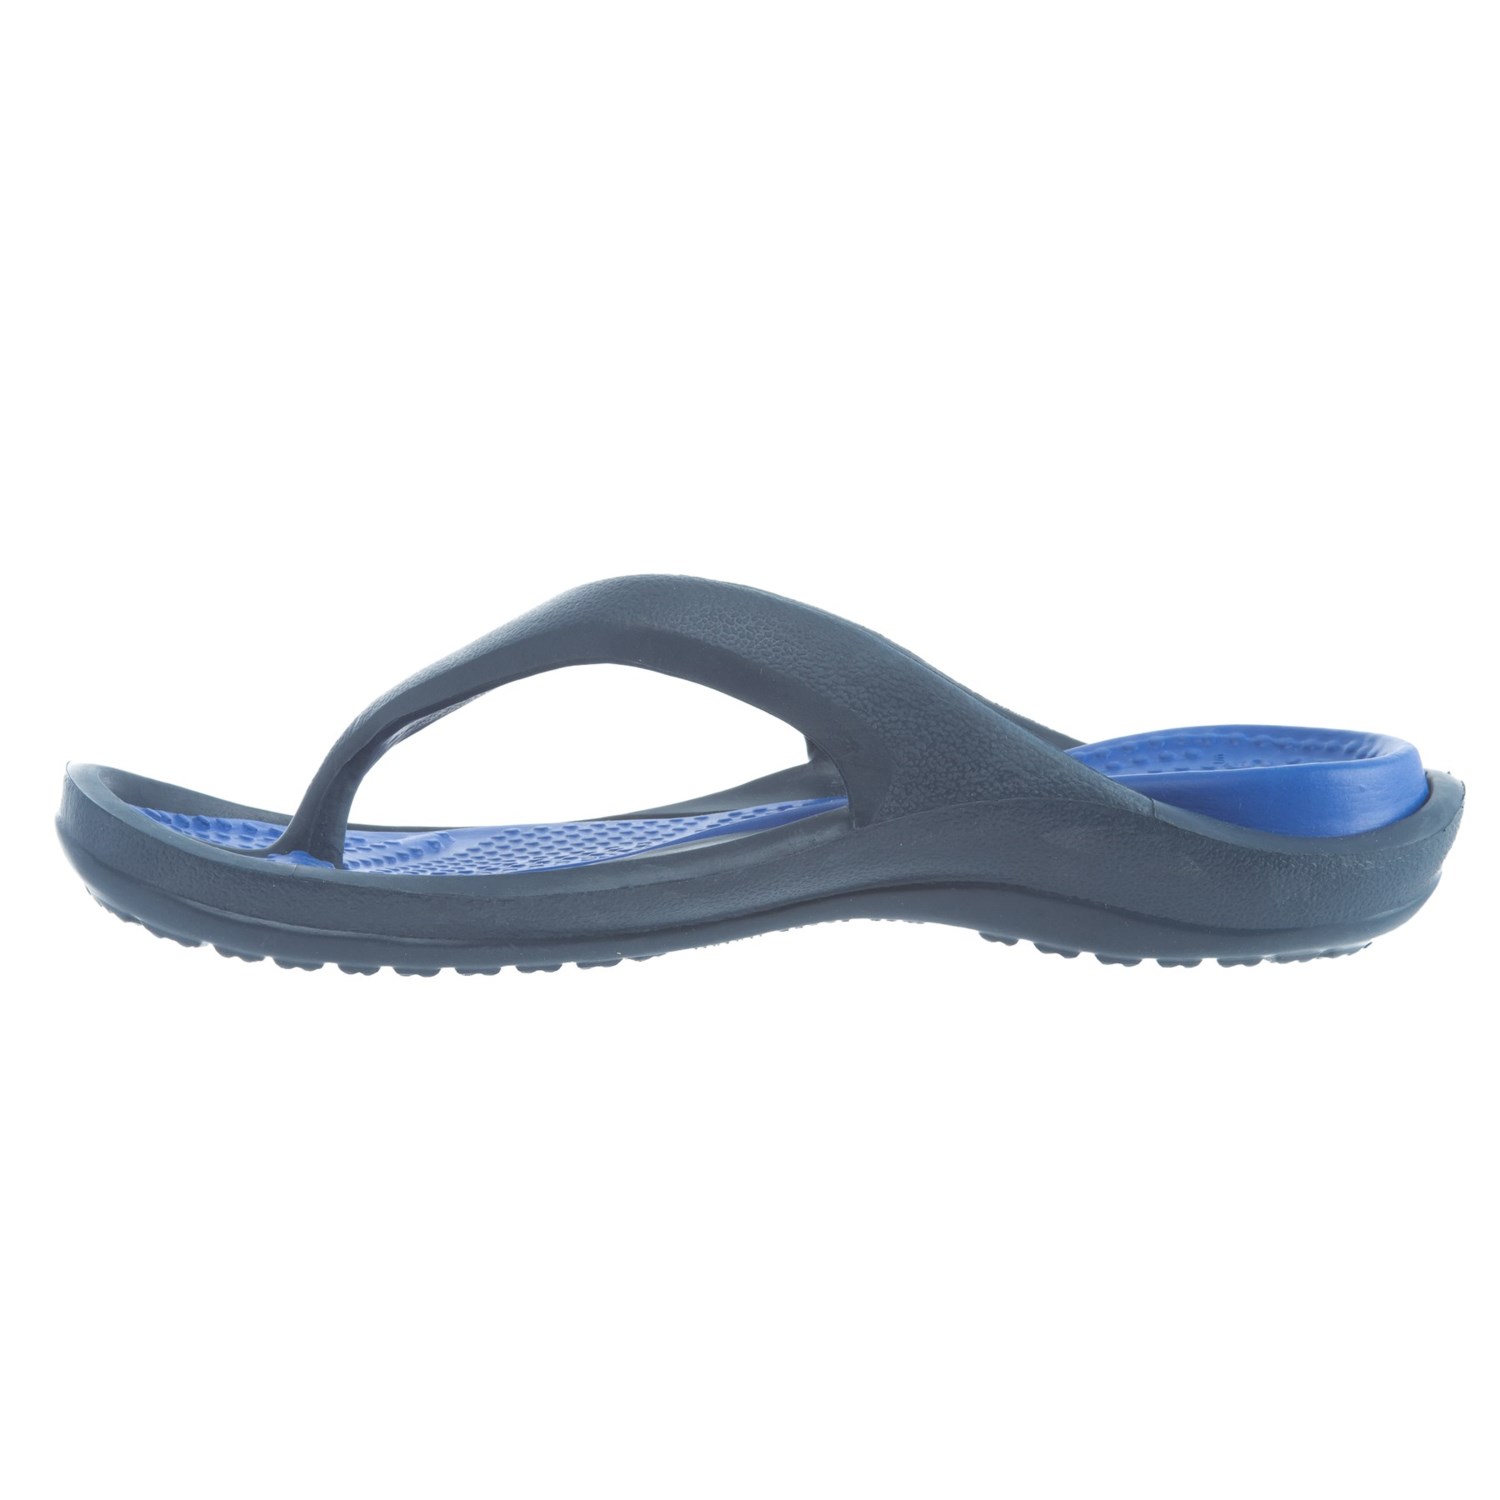 Crocs Athens Croslite® Flip-Flops (For Men) - Save 51%